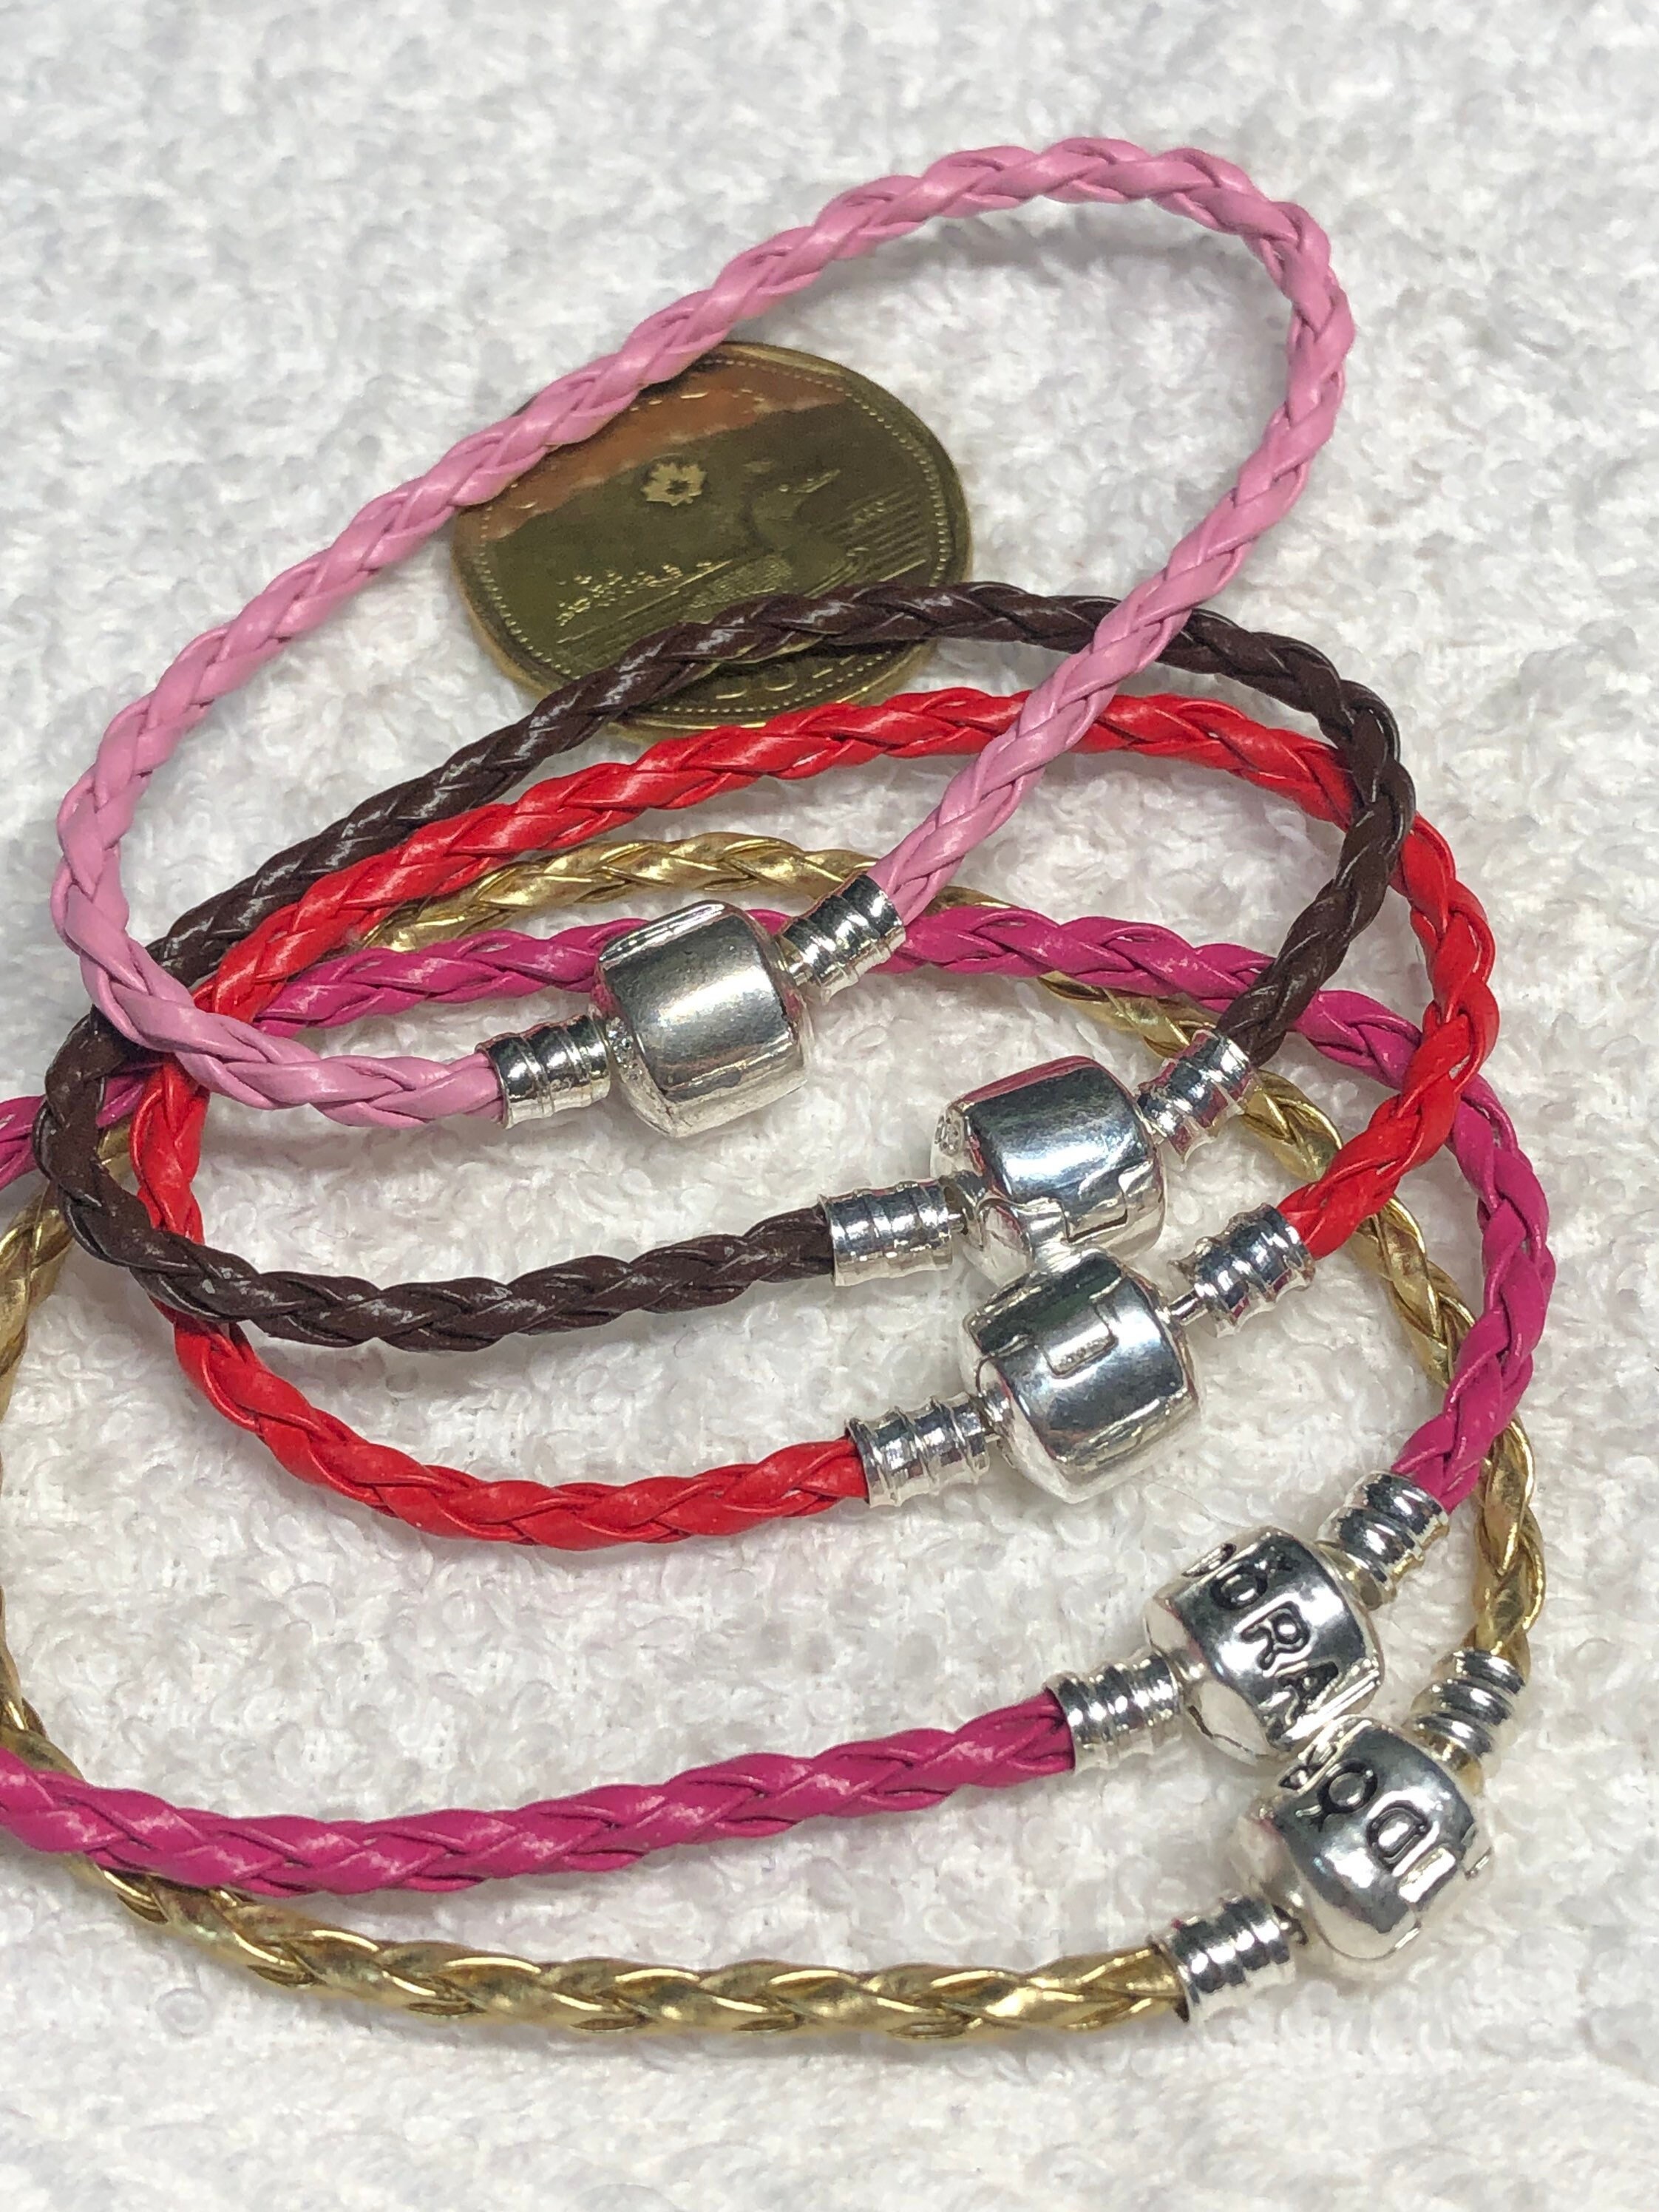 Double Pink Leather Bracelet - 590705CMP-D2 - Pandora